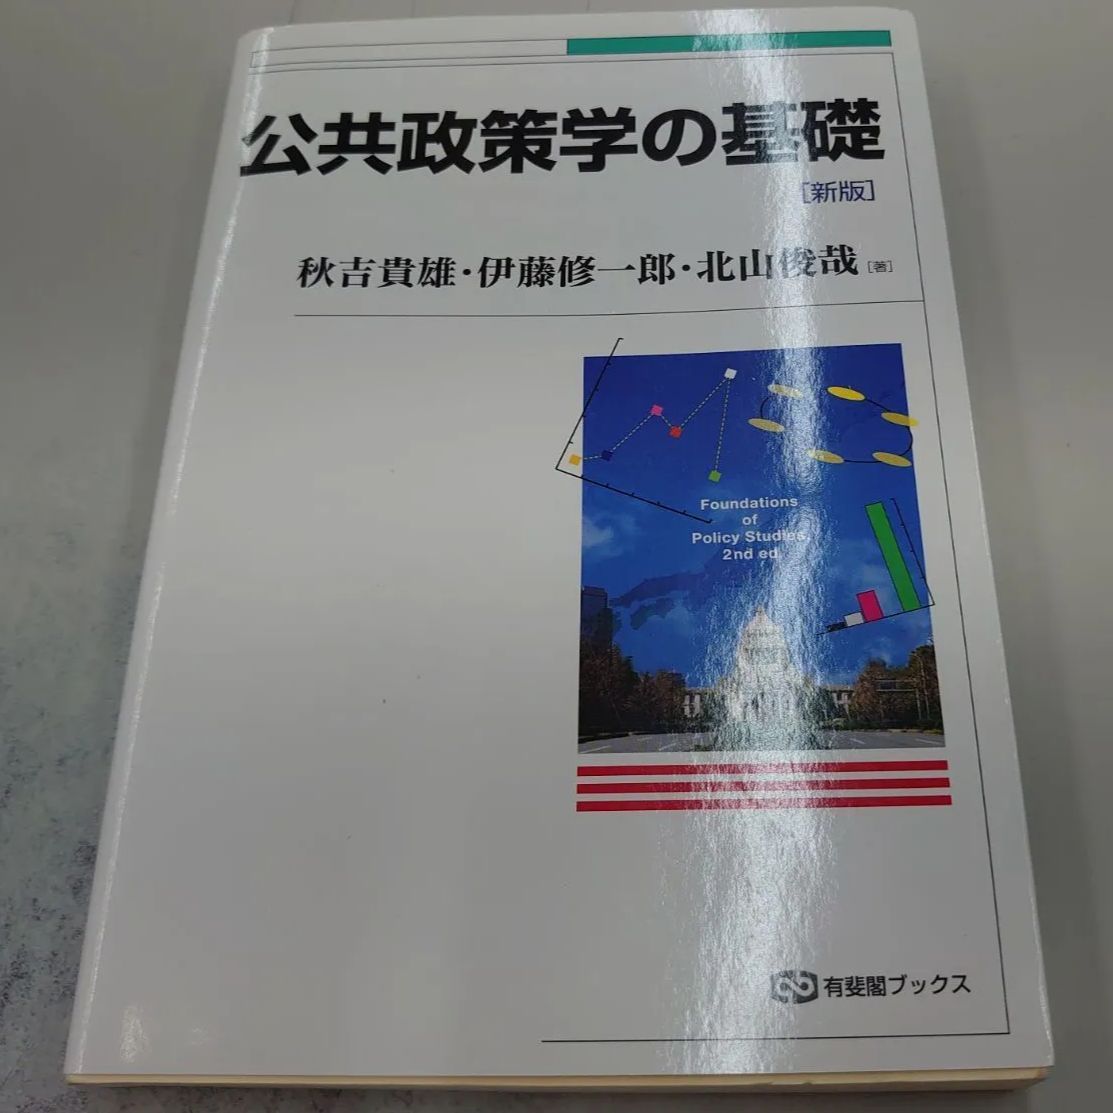 4558 公共政策学の基礎 新版 (有斐閣ブックス) - マイブックス関大前店